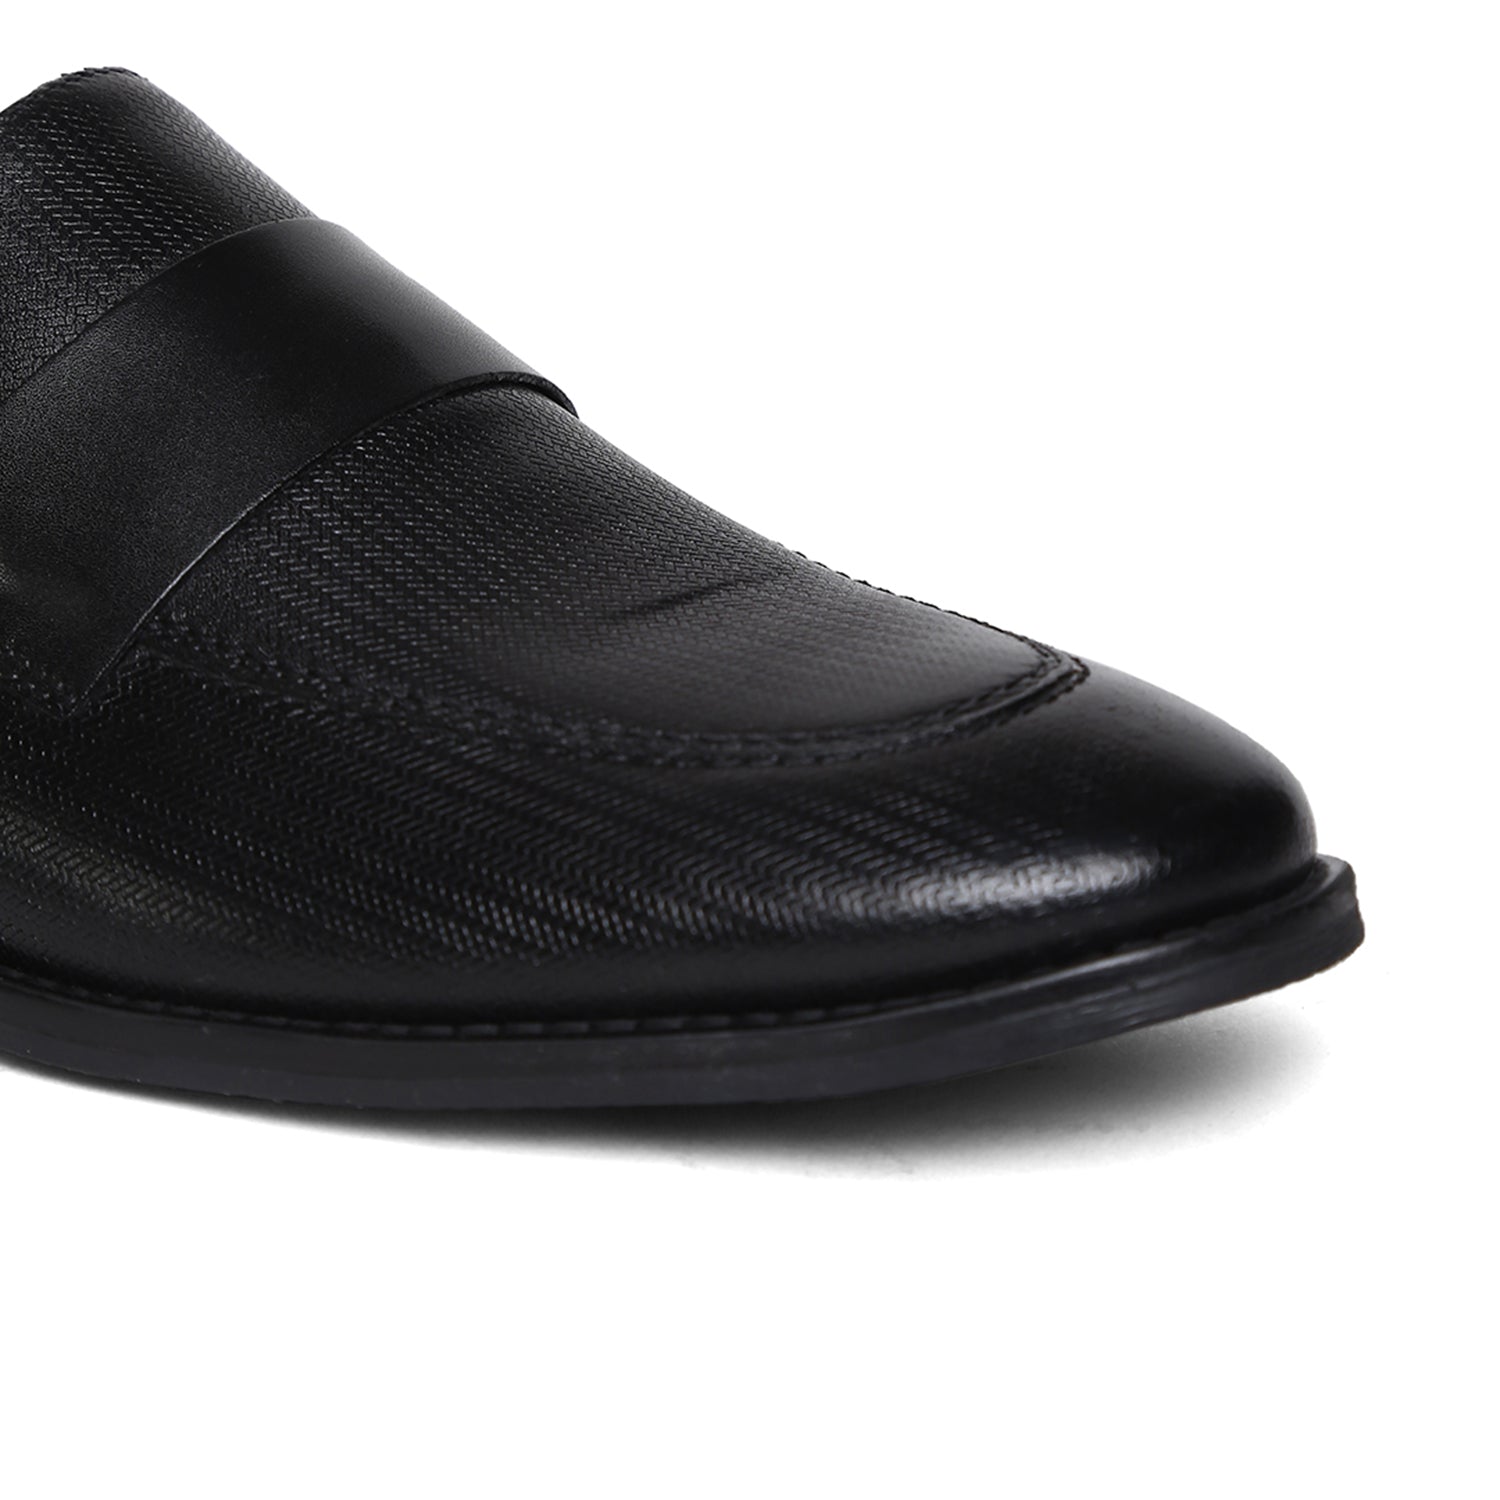 Masabih Genuine Leather Black Printed Loafer Slipon Shoes for Men